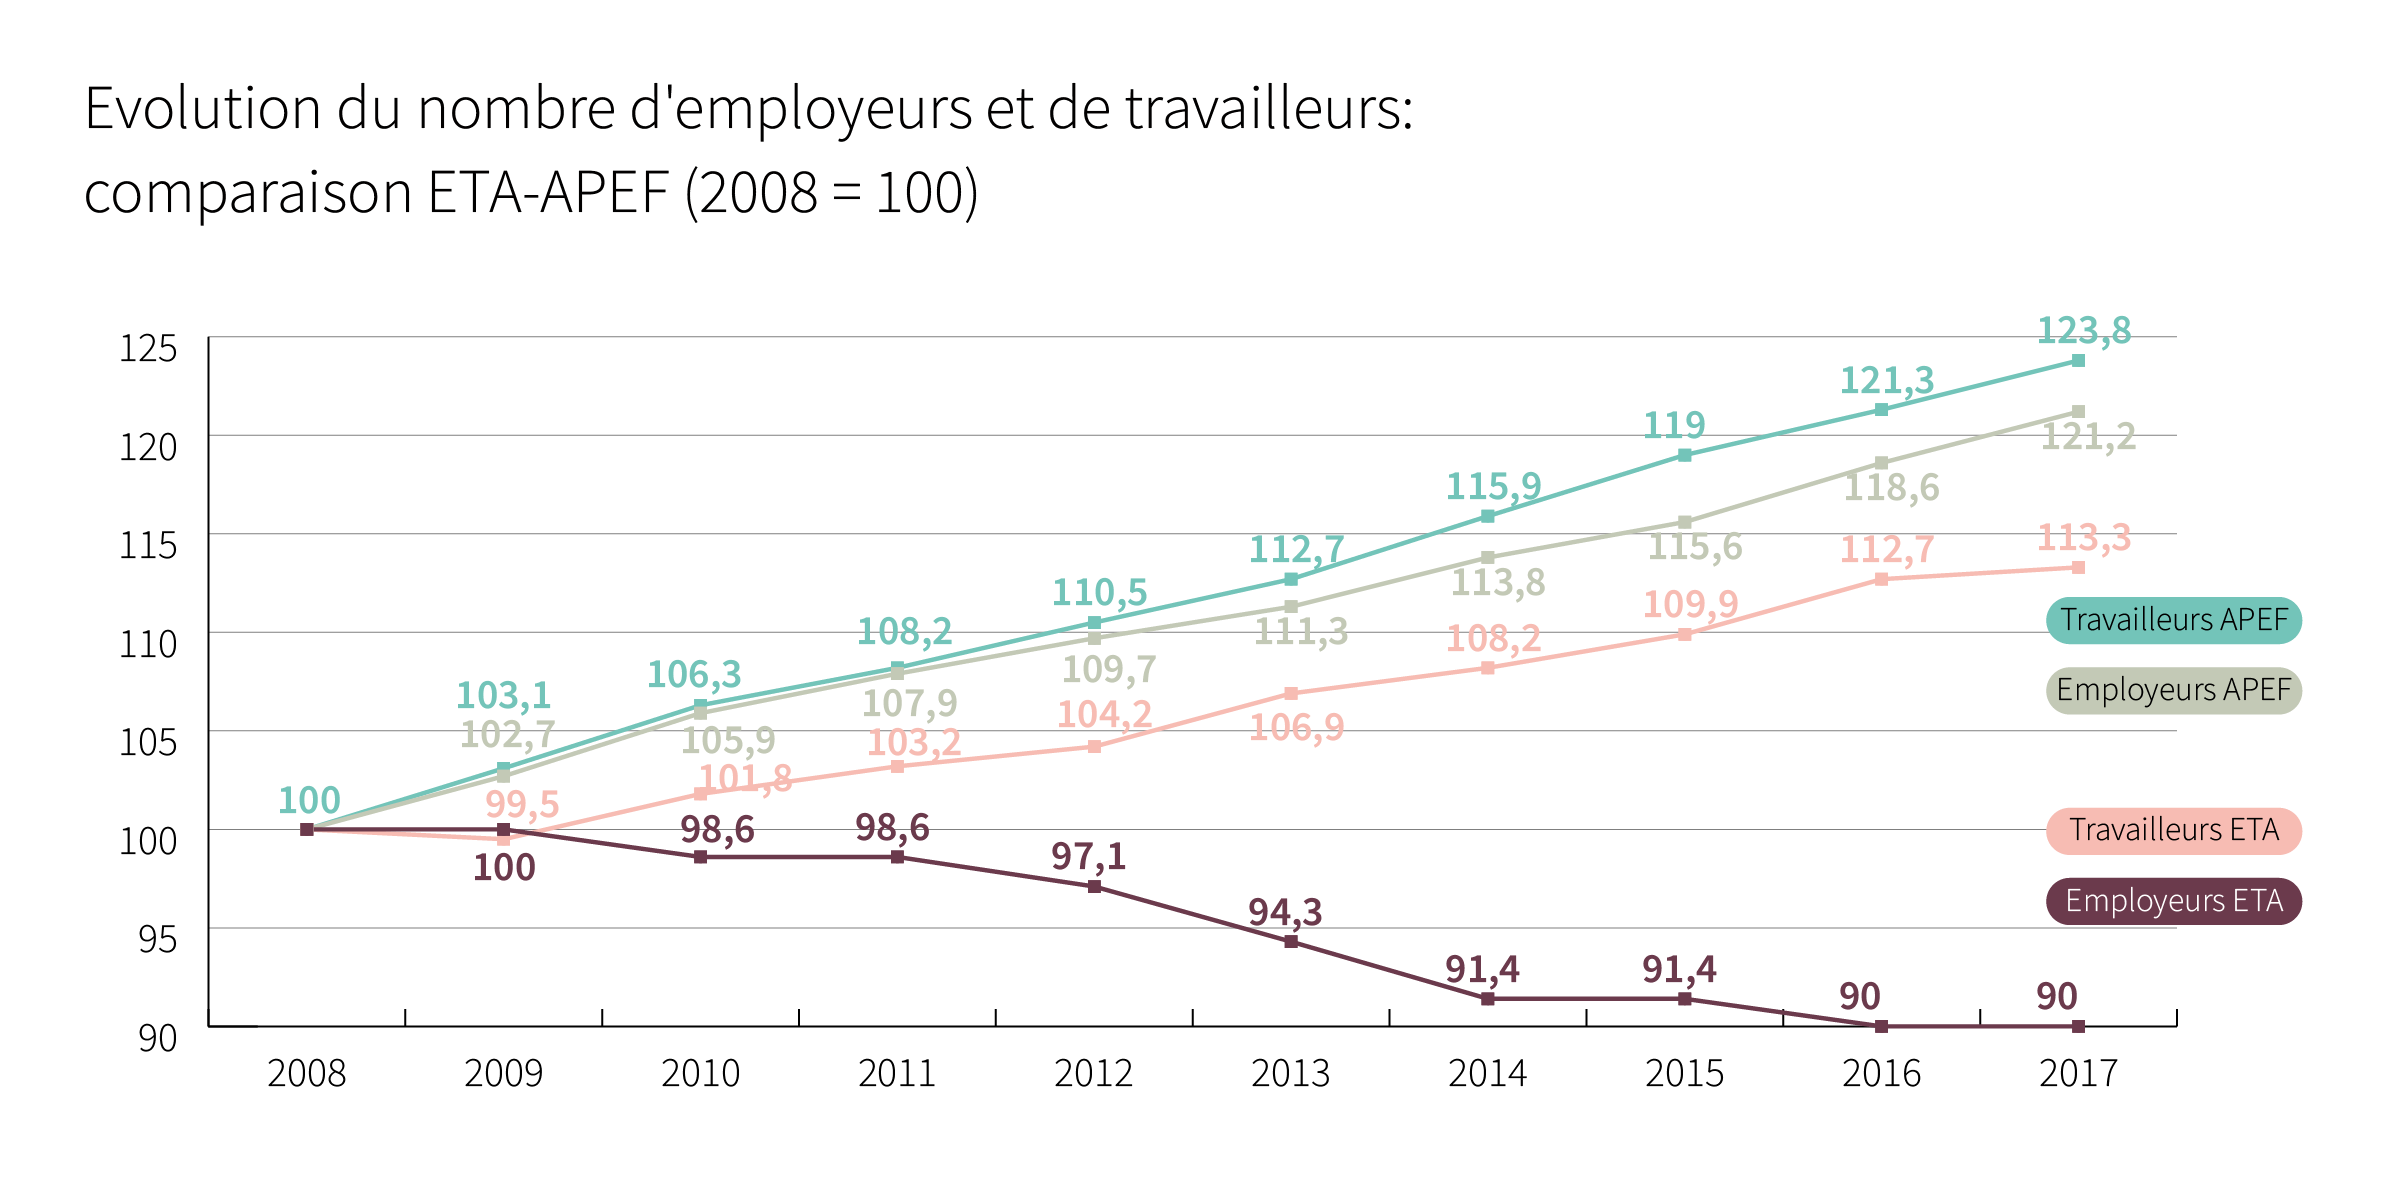 Evolution du nombre d’employeurs et de travailleurs: comparaison ETA-APEF (2008 = 100) - Cliquez pour agrandir